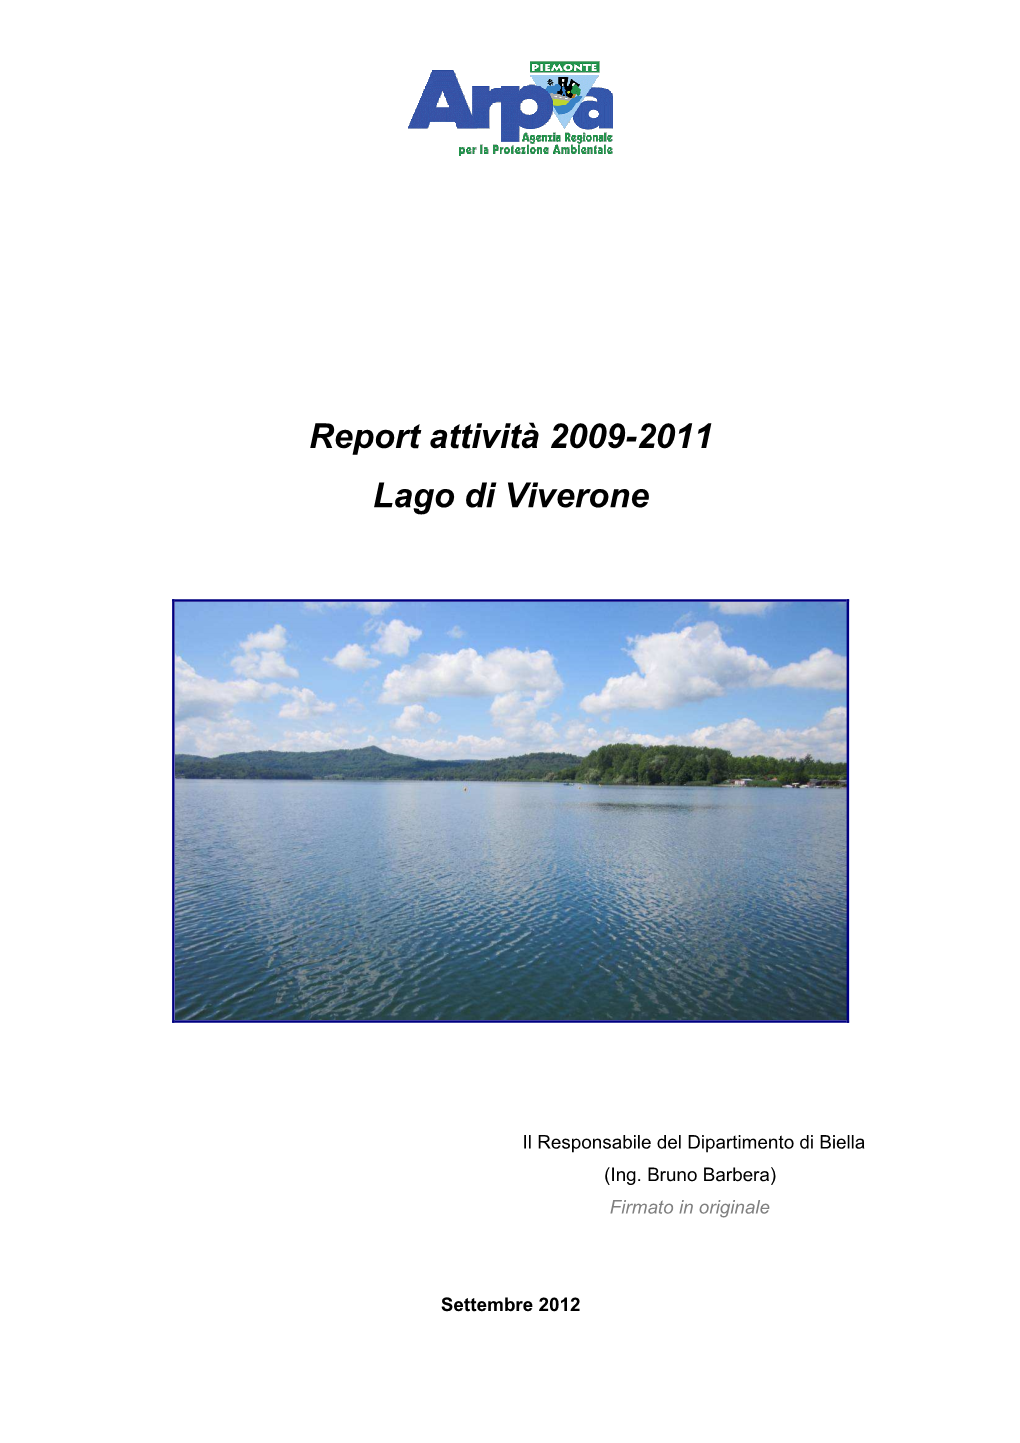 Lago Di Viverone Report 2009-2011